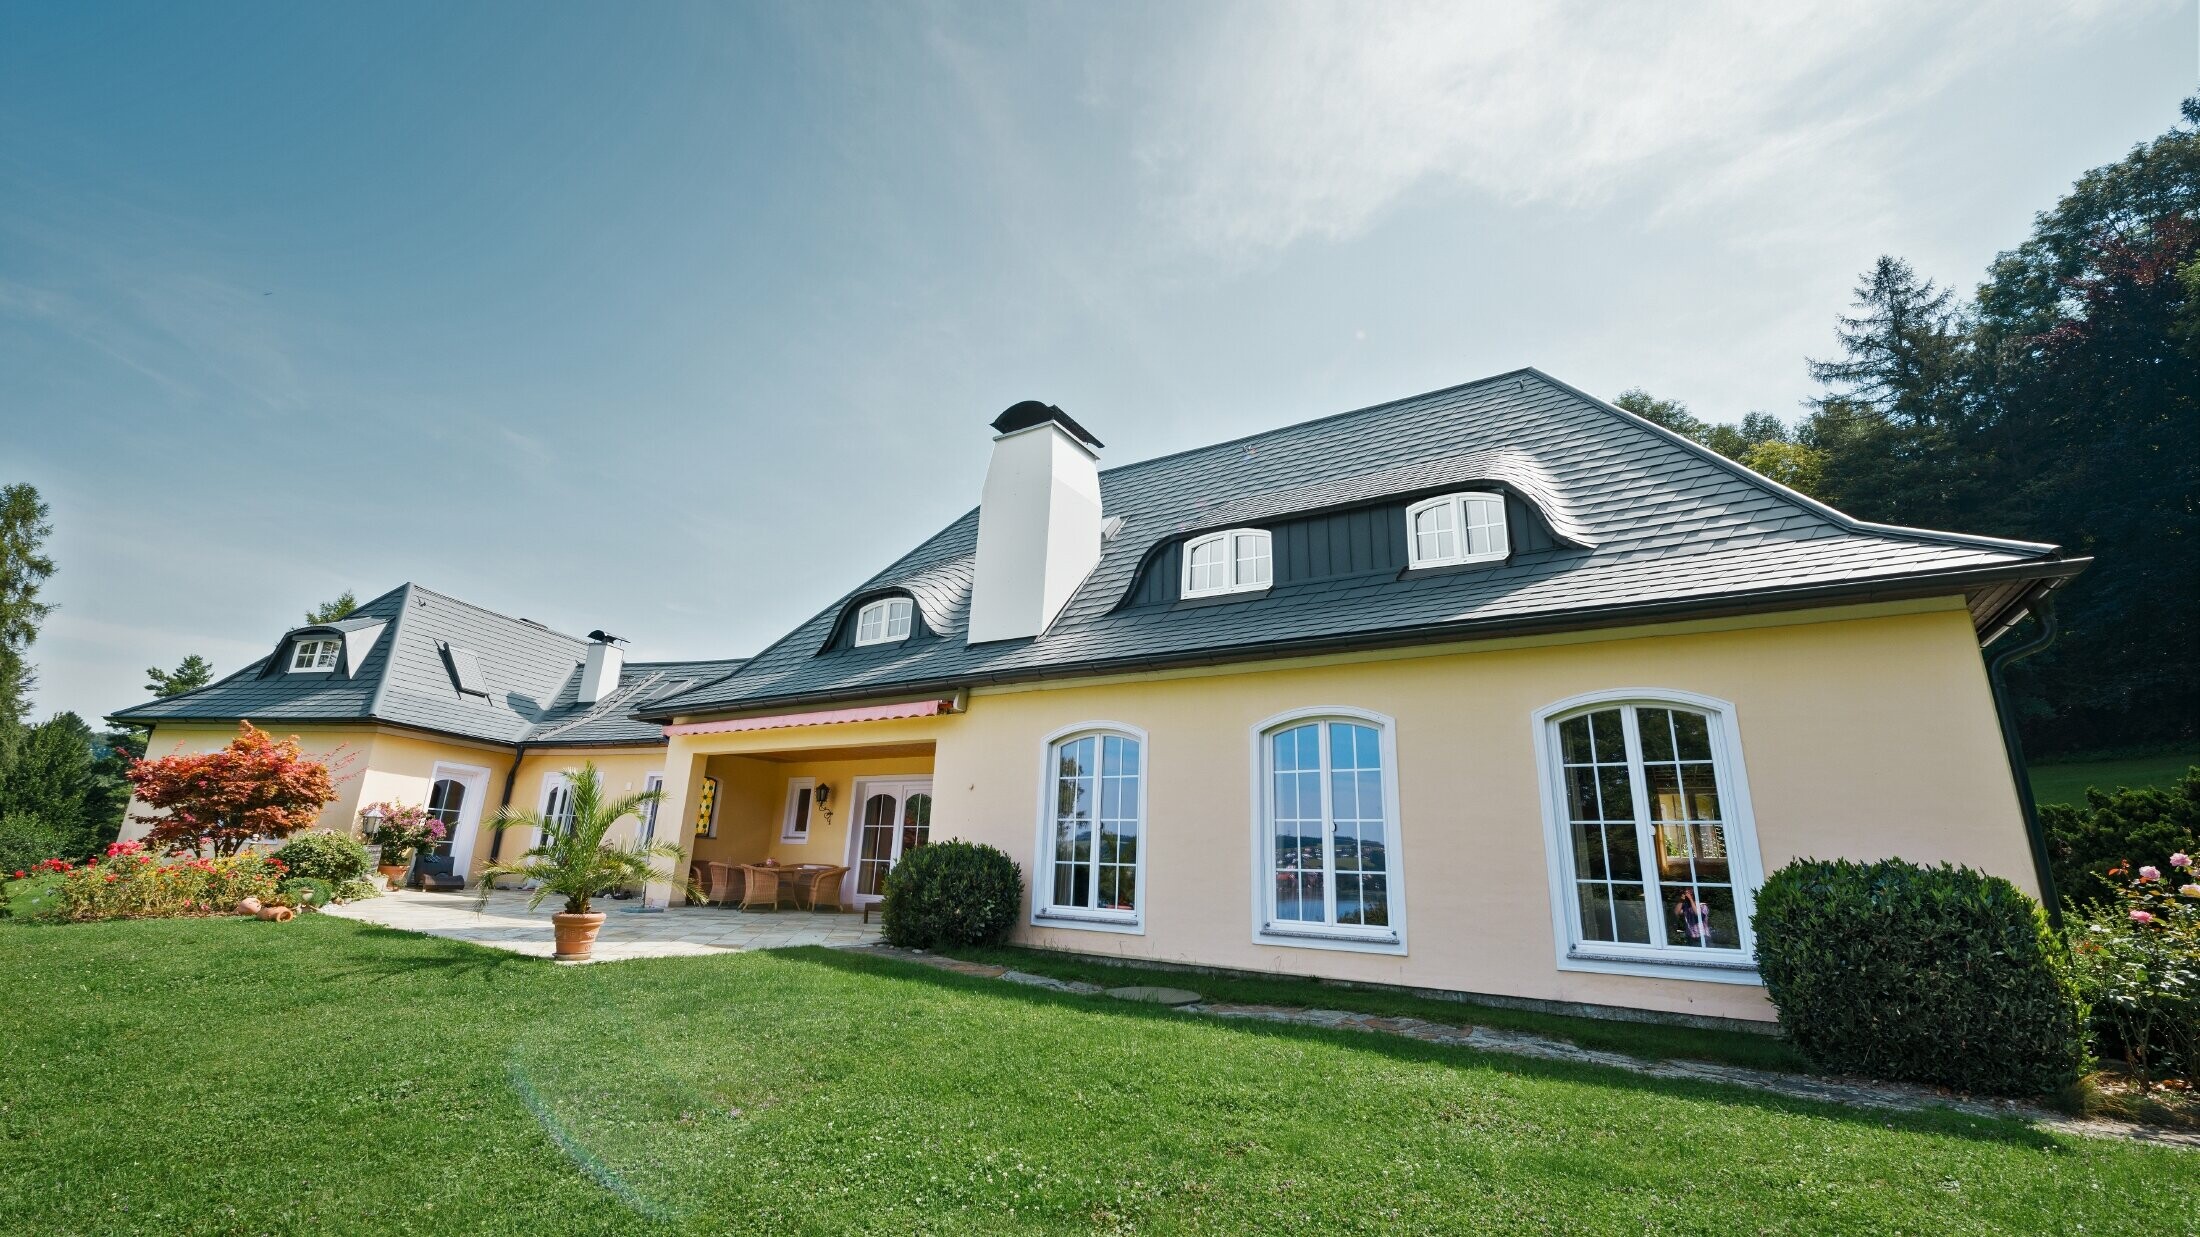 Maison individuelle classique avec lucarne arrondie, recouverte des bardeaux de toiture PREFA résistants aux tempêtes, avec garantie matériau de 40 ans.